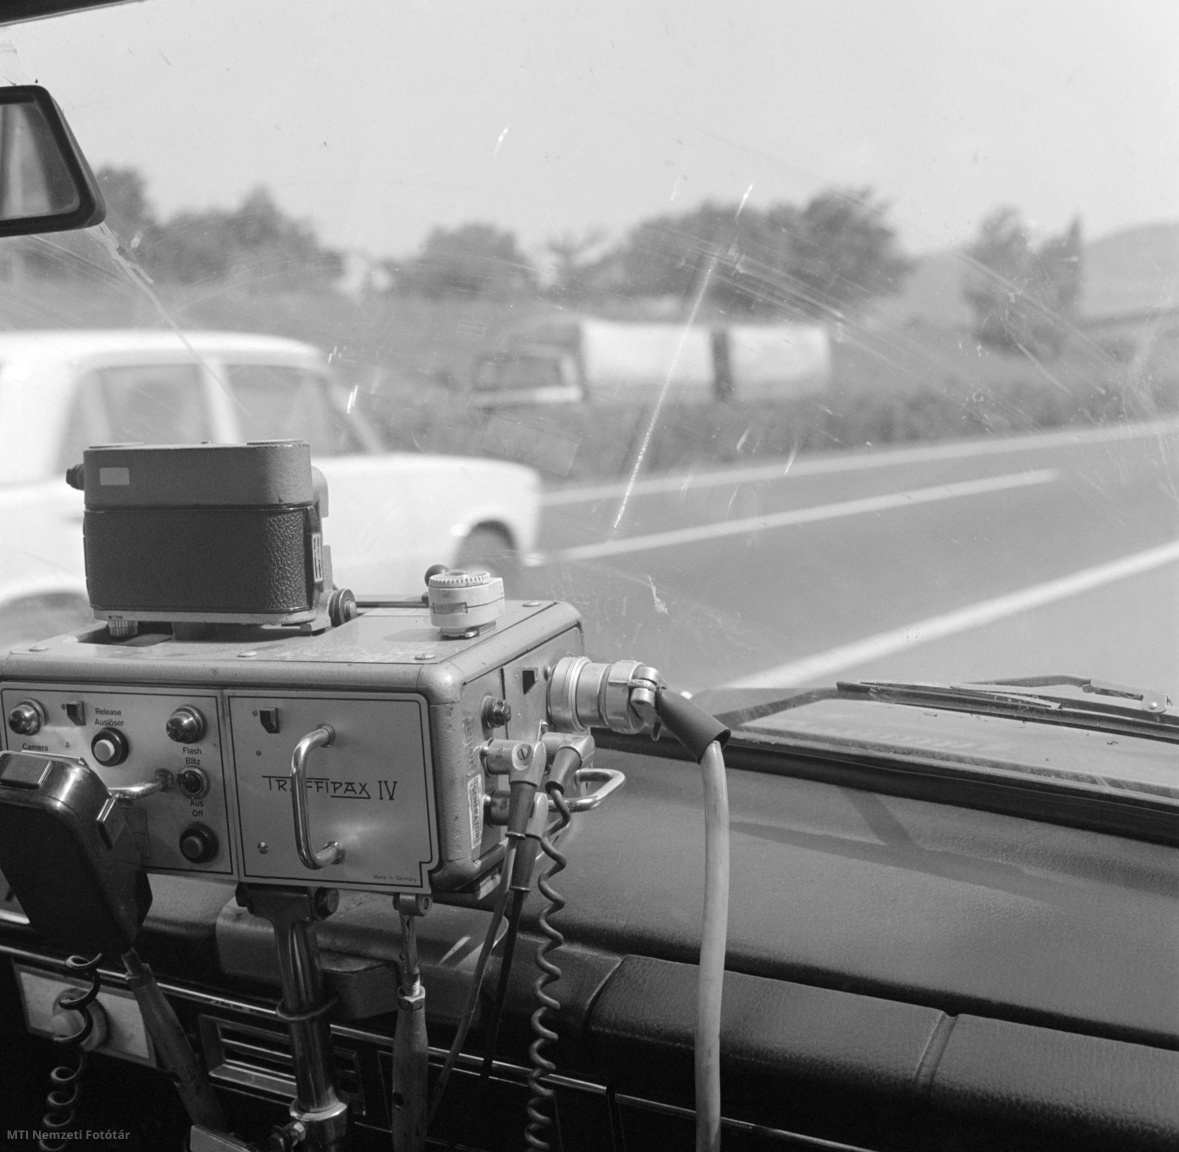 1981. június 13. Microspeed gyártmányú traffipax berendezés fényképezi a gyorshajtókat, egy rendőrségi autó utasteréből, az M7-es autópályán. 1967-ben jelent meg Magyarországon az első traffipax. Pár év múlva kerültek a rendszerbe a német gyártmányú Microspeed, majd a Speedophot traffipaxok, amelyek pontosabbak voltak elődeiknél. Működési elvük: a sebességet a Doppler-elv alapján számították ki, vagyis mérték, hogy a rádióhullámok miként változnak meg a kocsikról visszaverődve.